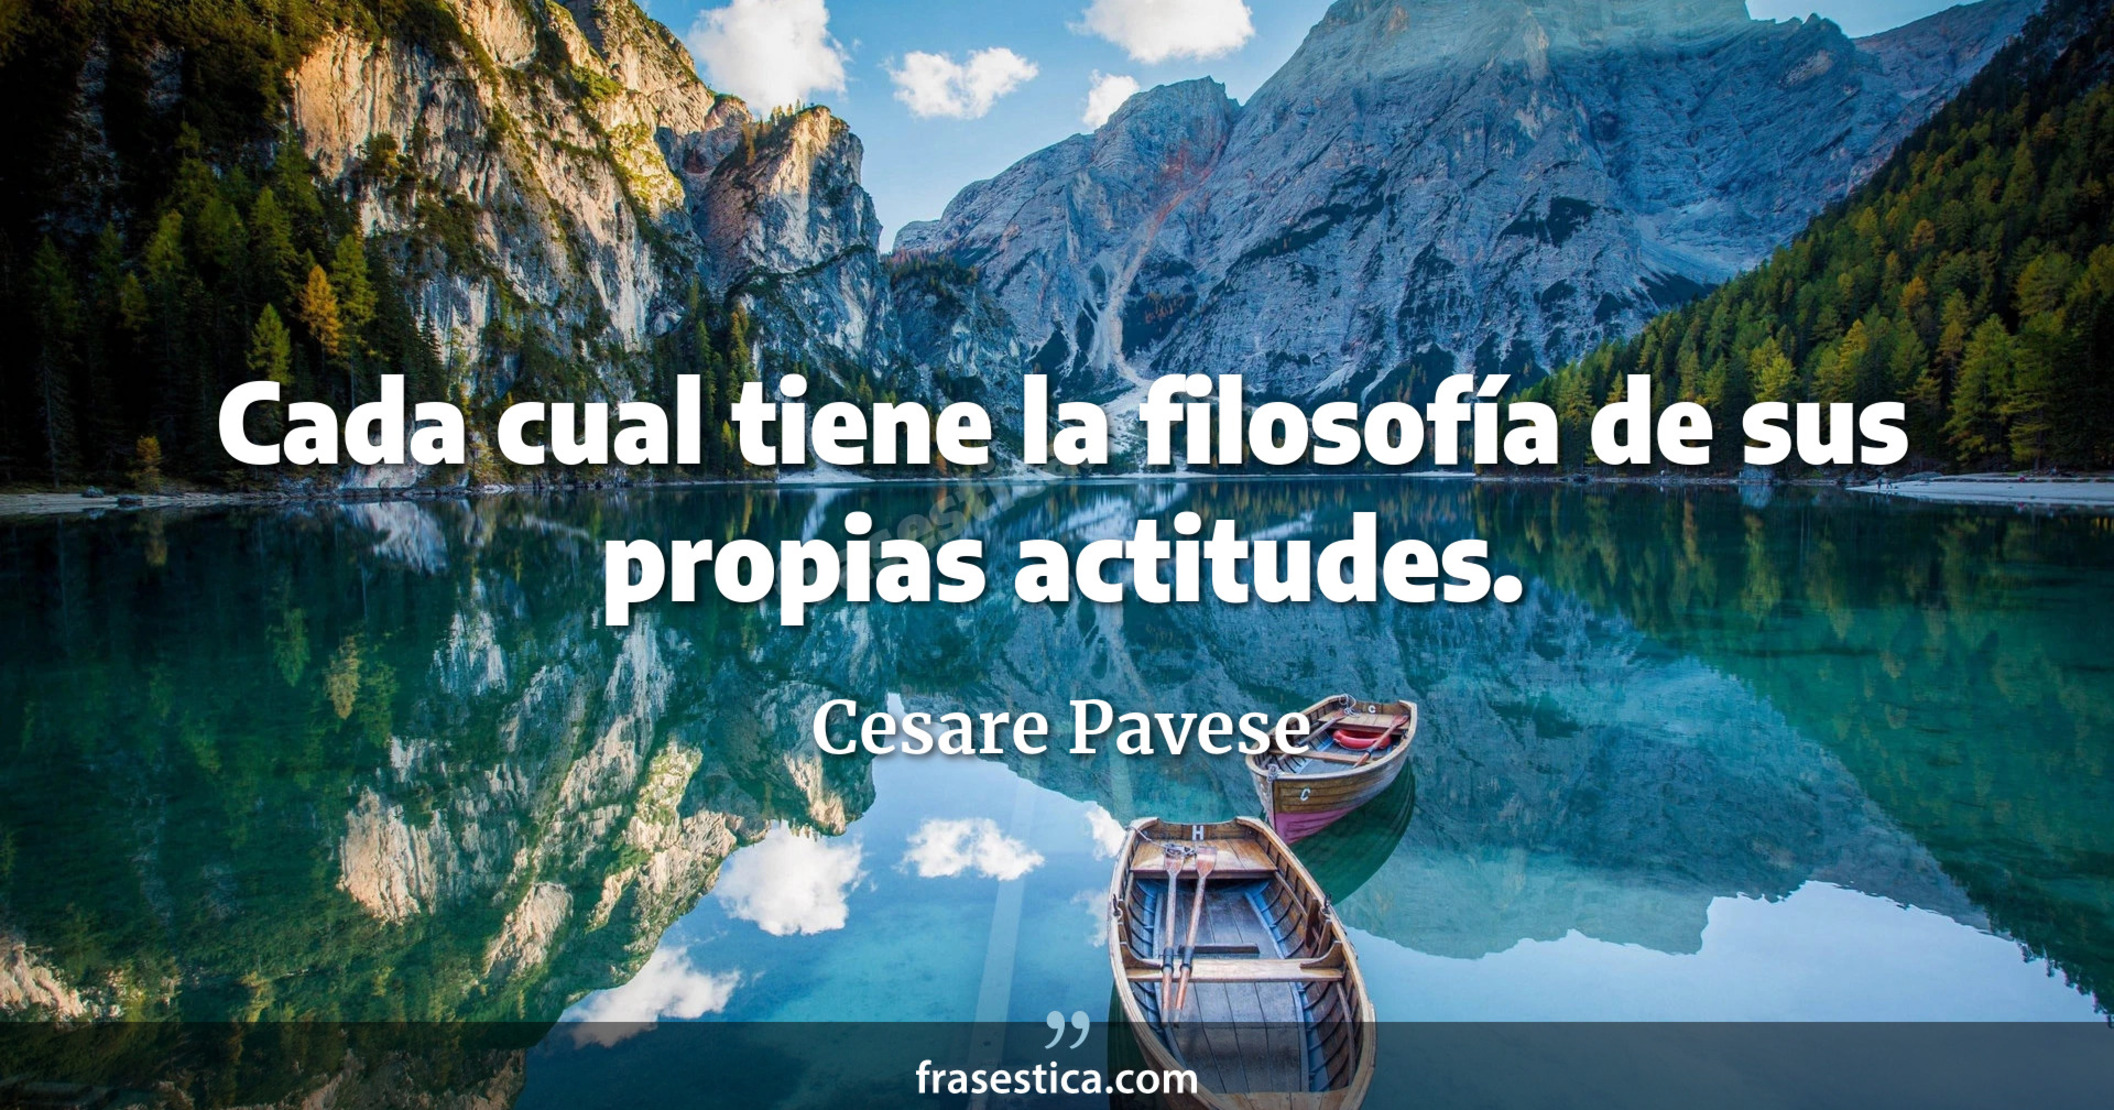 Cada cual tiene la filosofía de sus propias actitudes. - Cesare Pavese